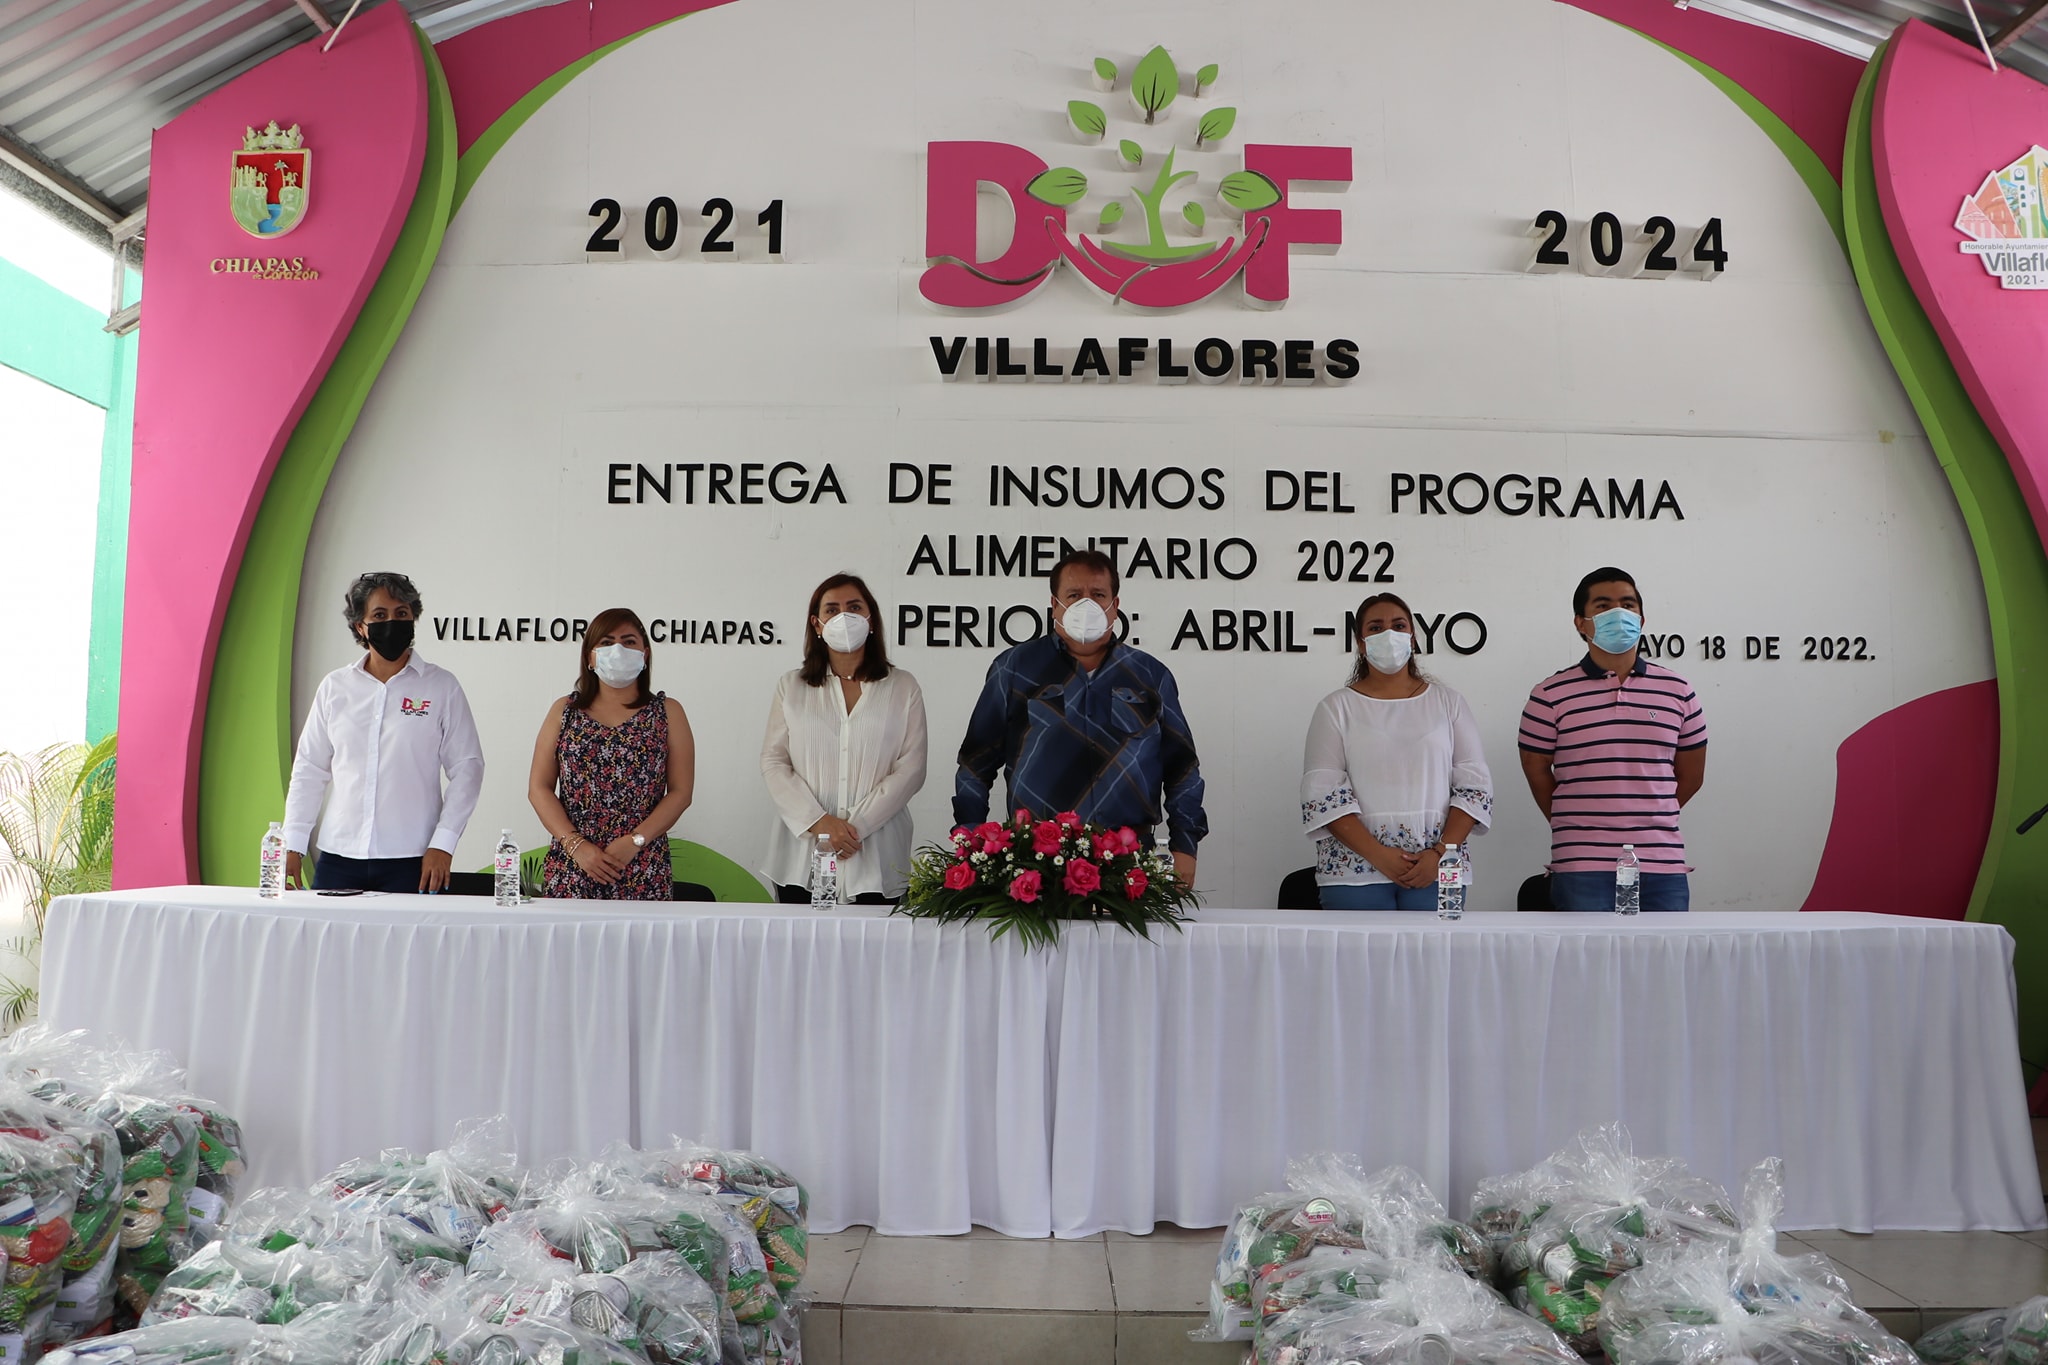 En Villaflores entregaron insumos del programa alimentario 2022